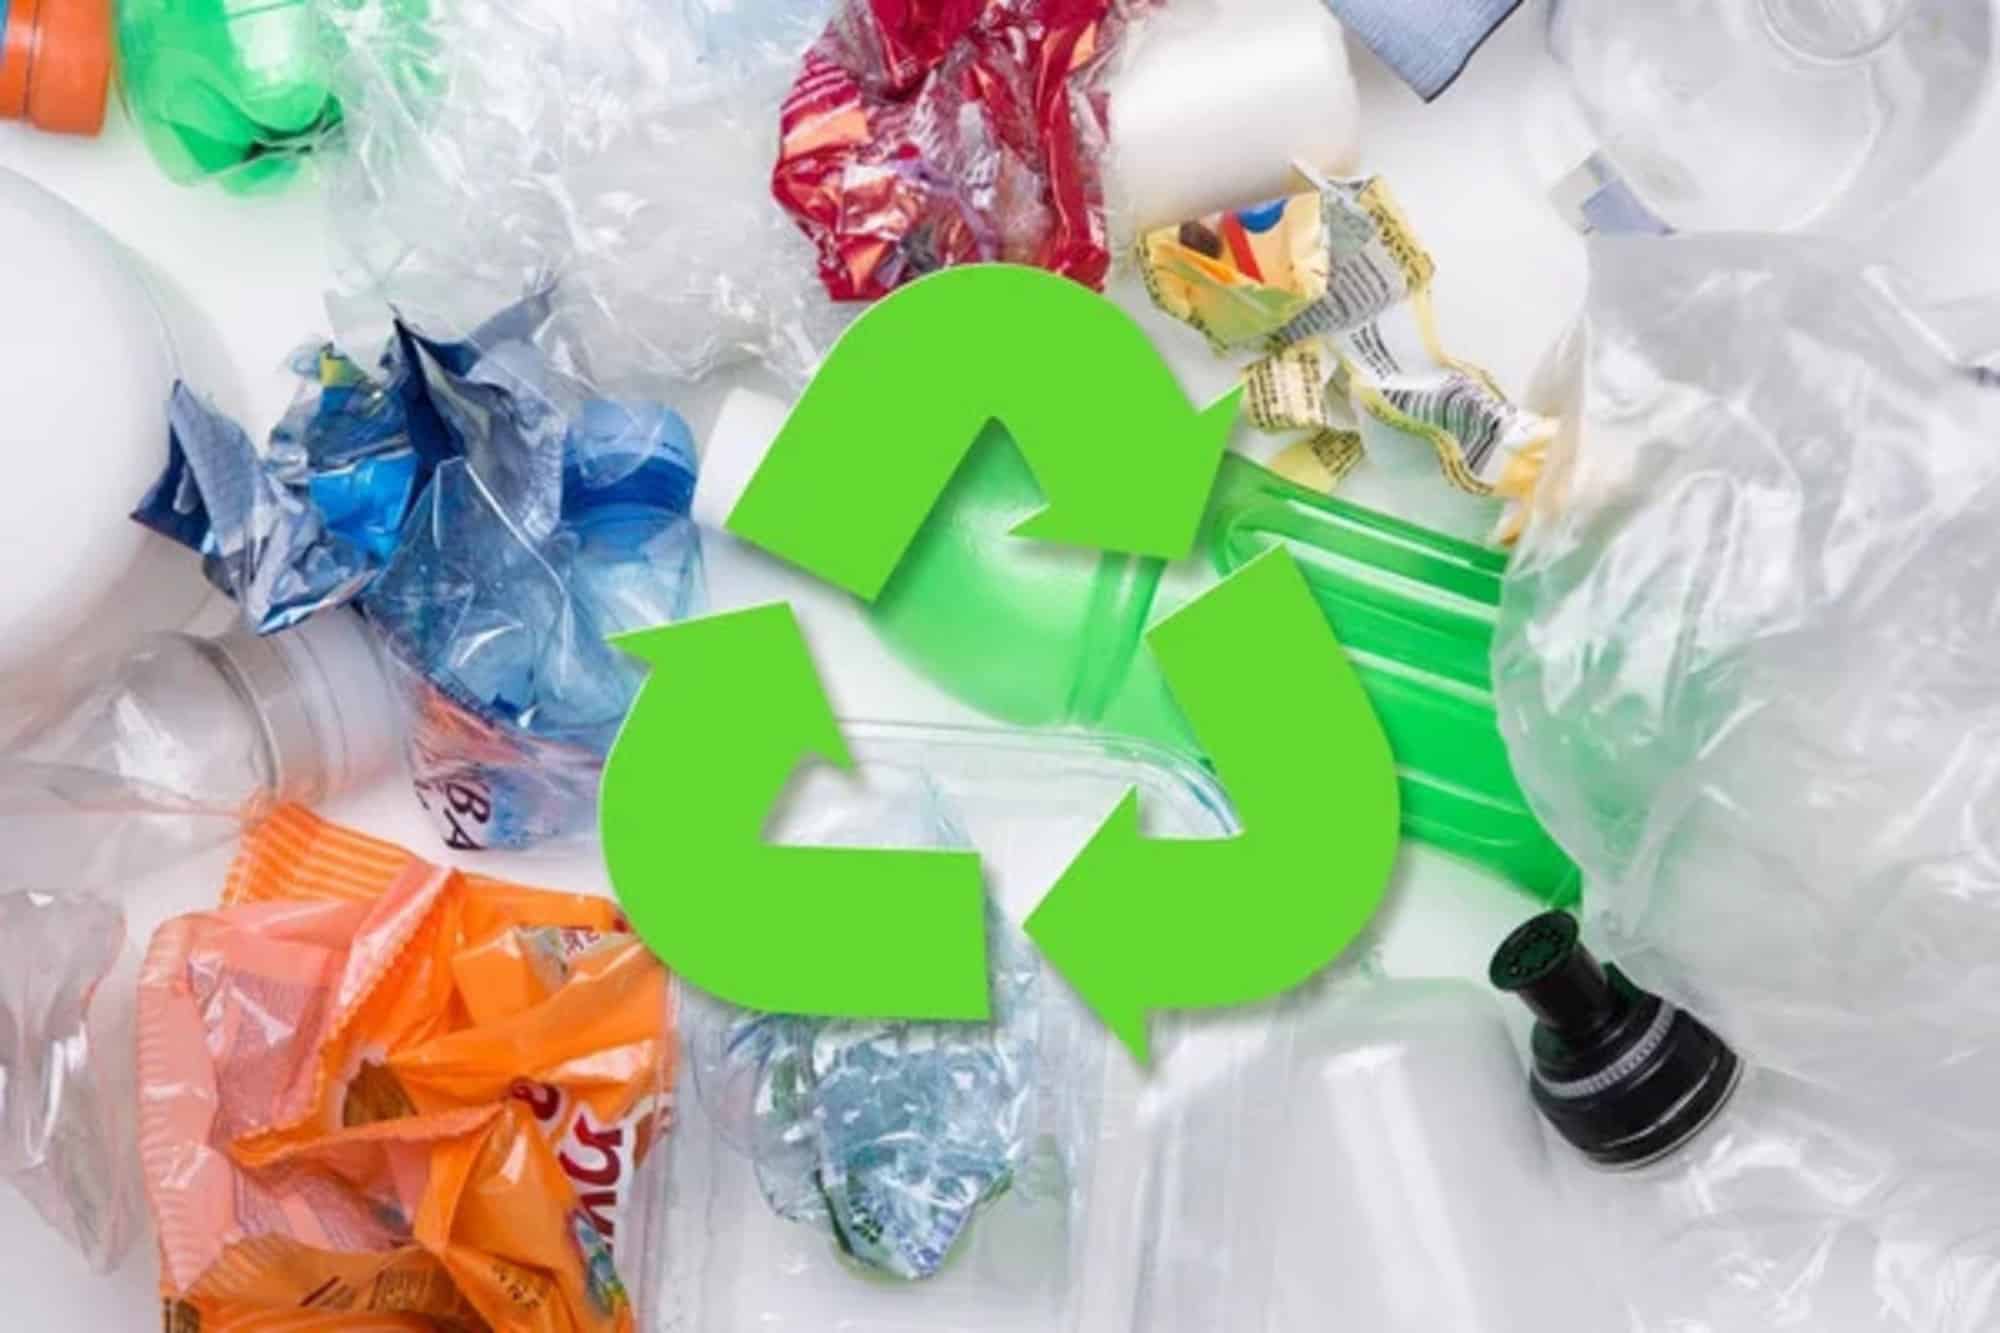 riciclaggio enzimatico, plastica, PET, riciclo, impatto ambientale, enzima, risparmio, degradazione, polimero, economia circolare, scomposizione, batterio, bottiglie, tessuti, inquinamento, Energy Close-up Engineering